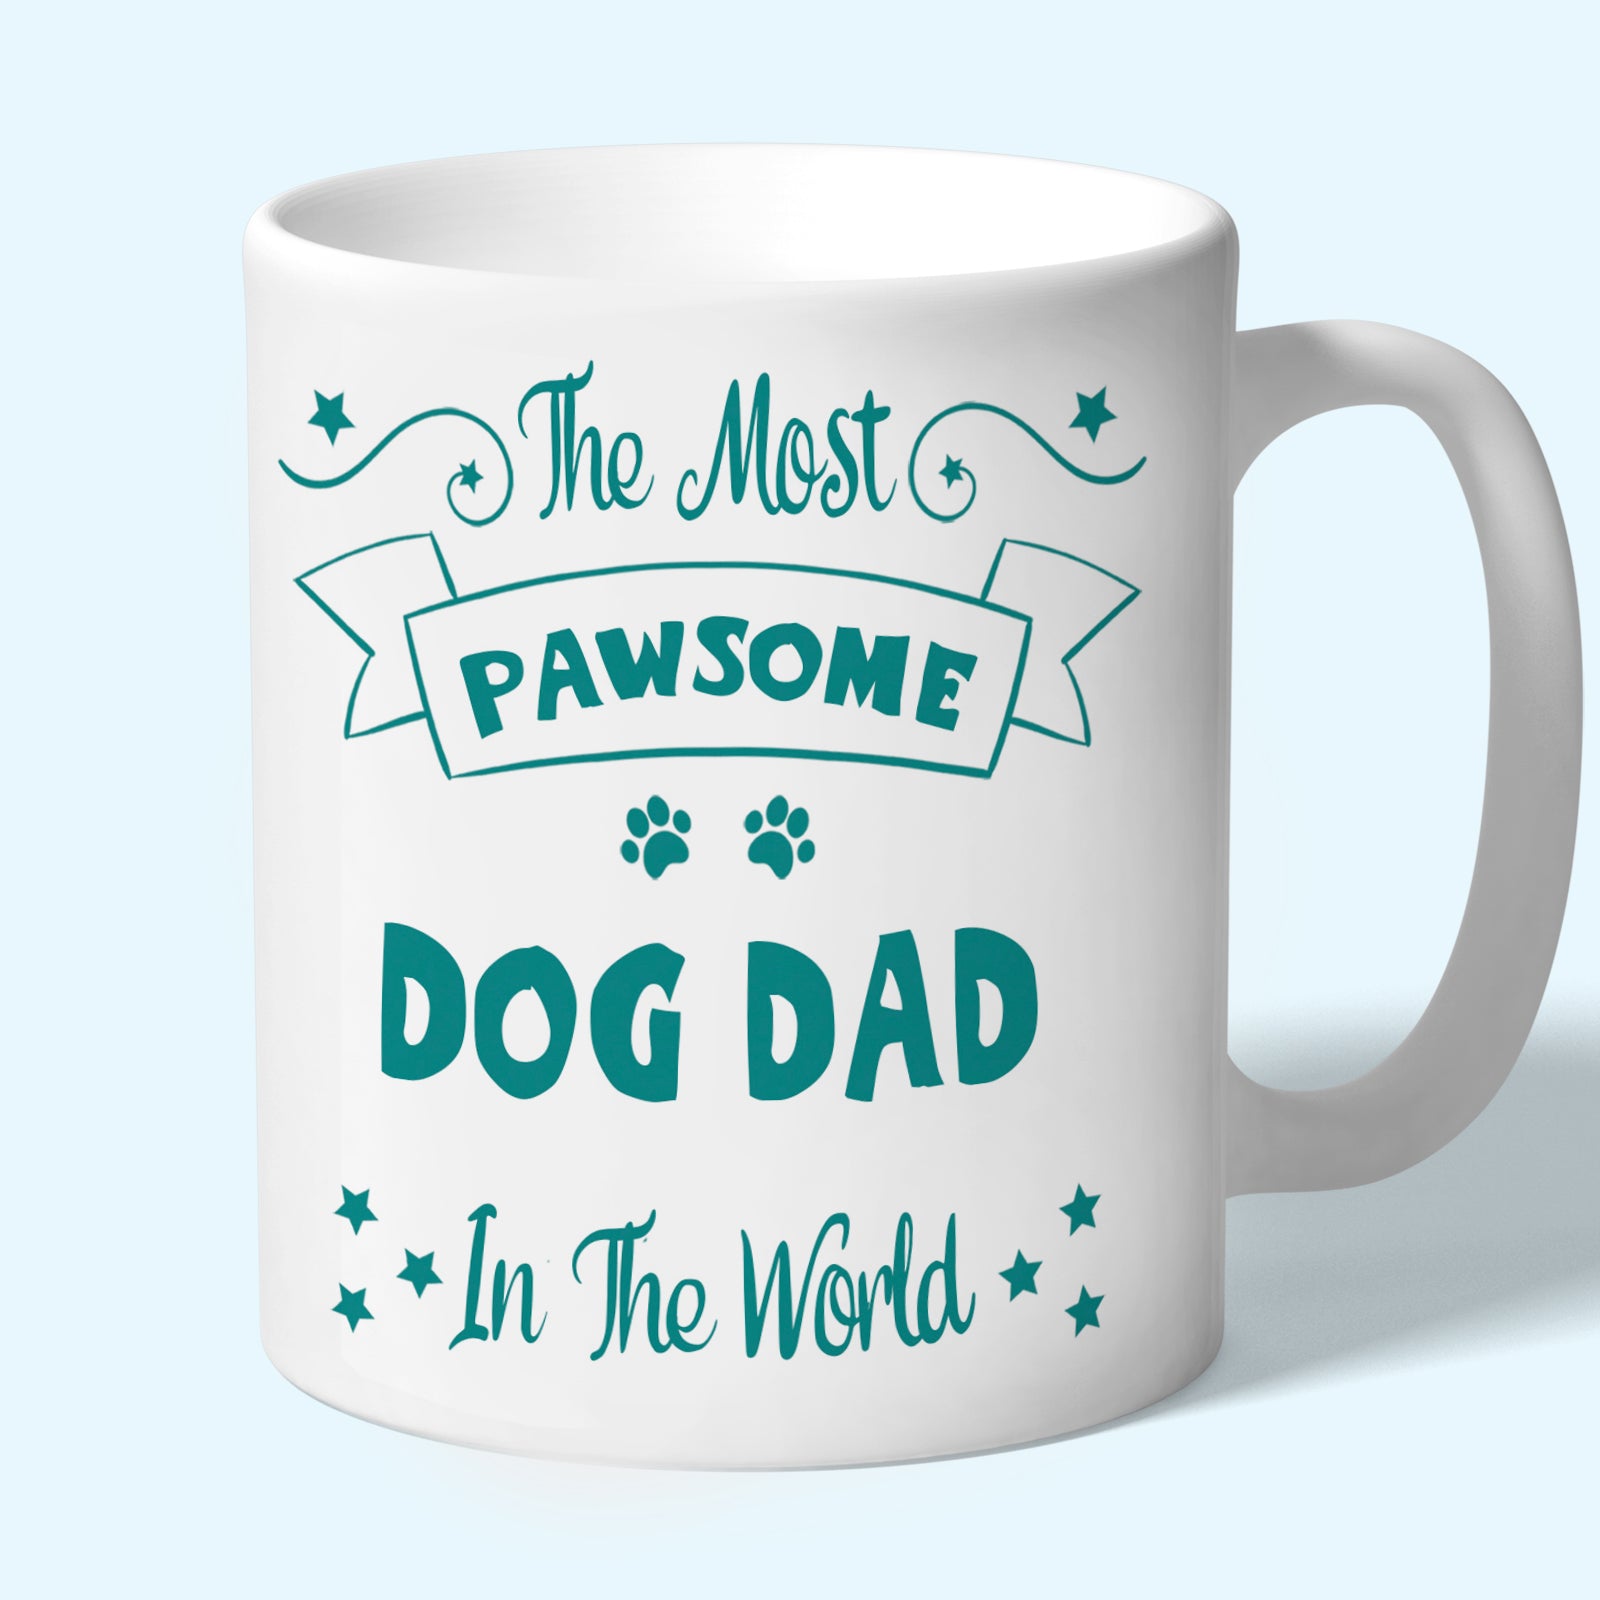 Dog Dad Mug Gift Pawsome Teal